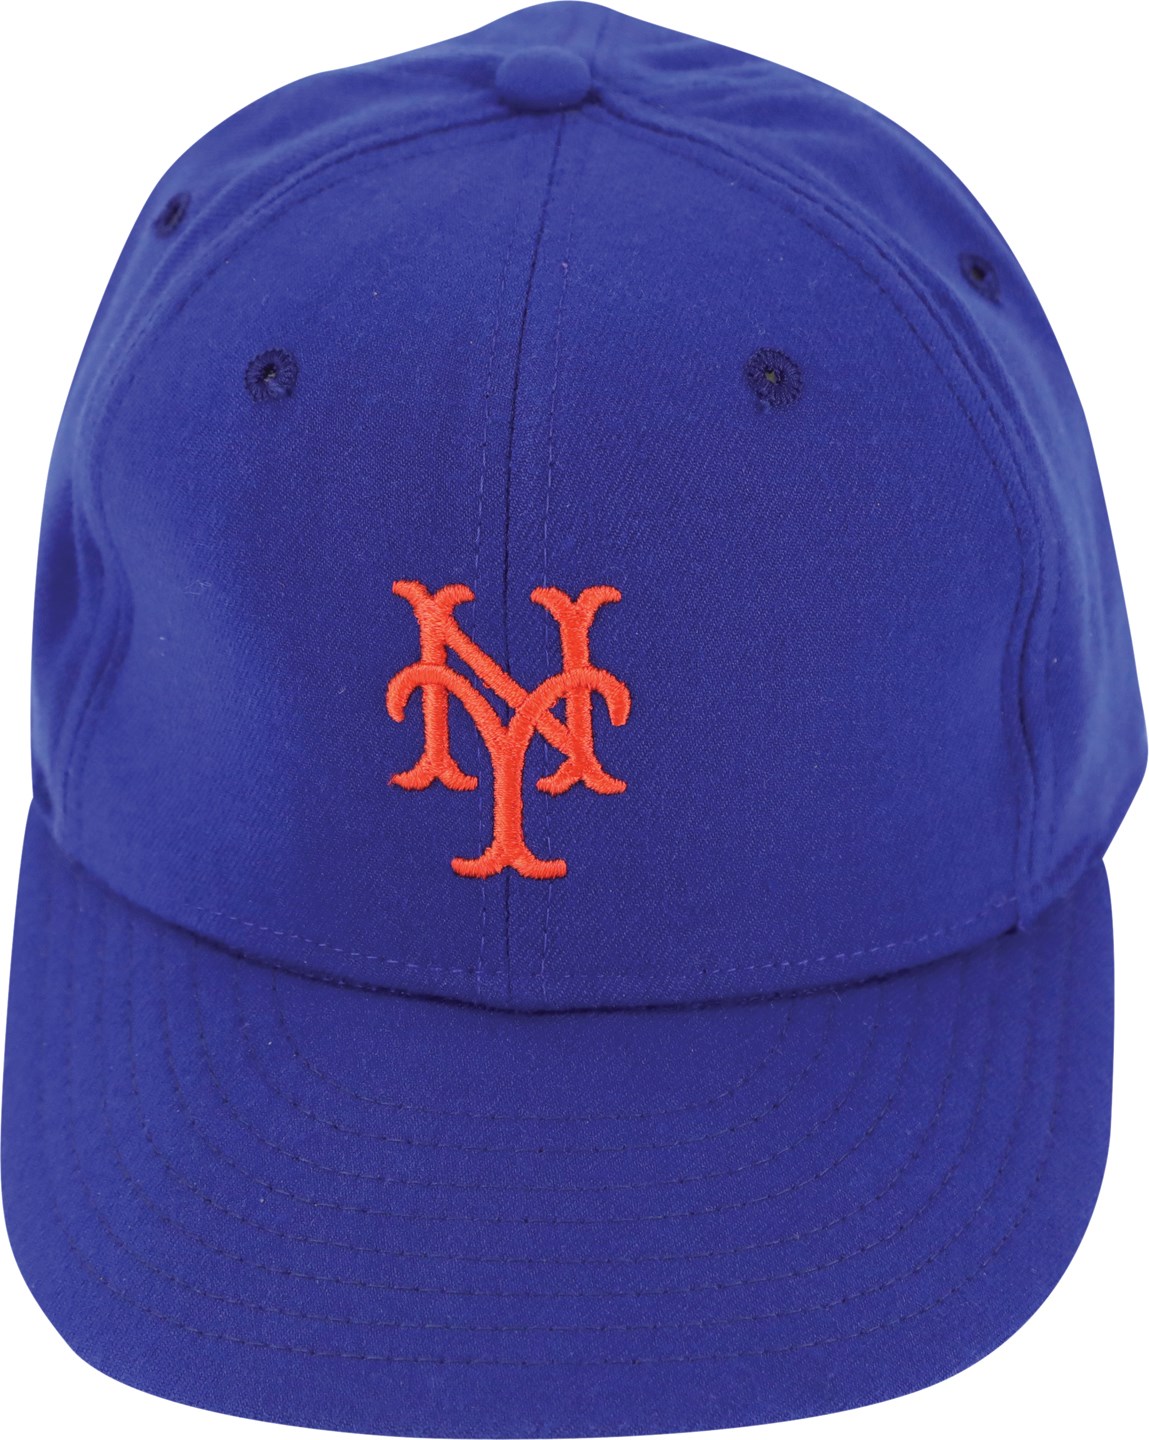 - 1983 Tom Seaver New York Mets Game Used Hat